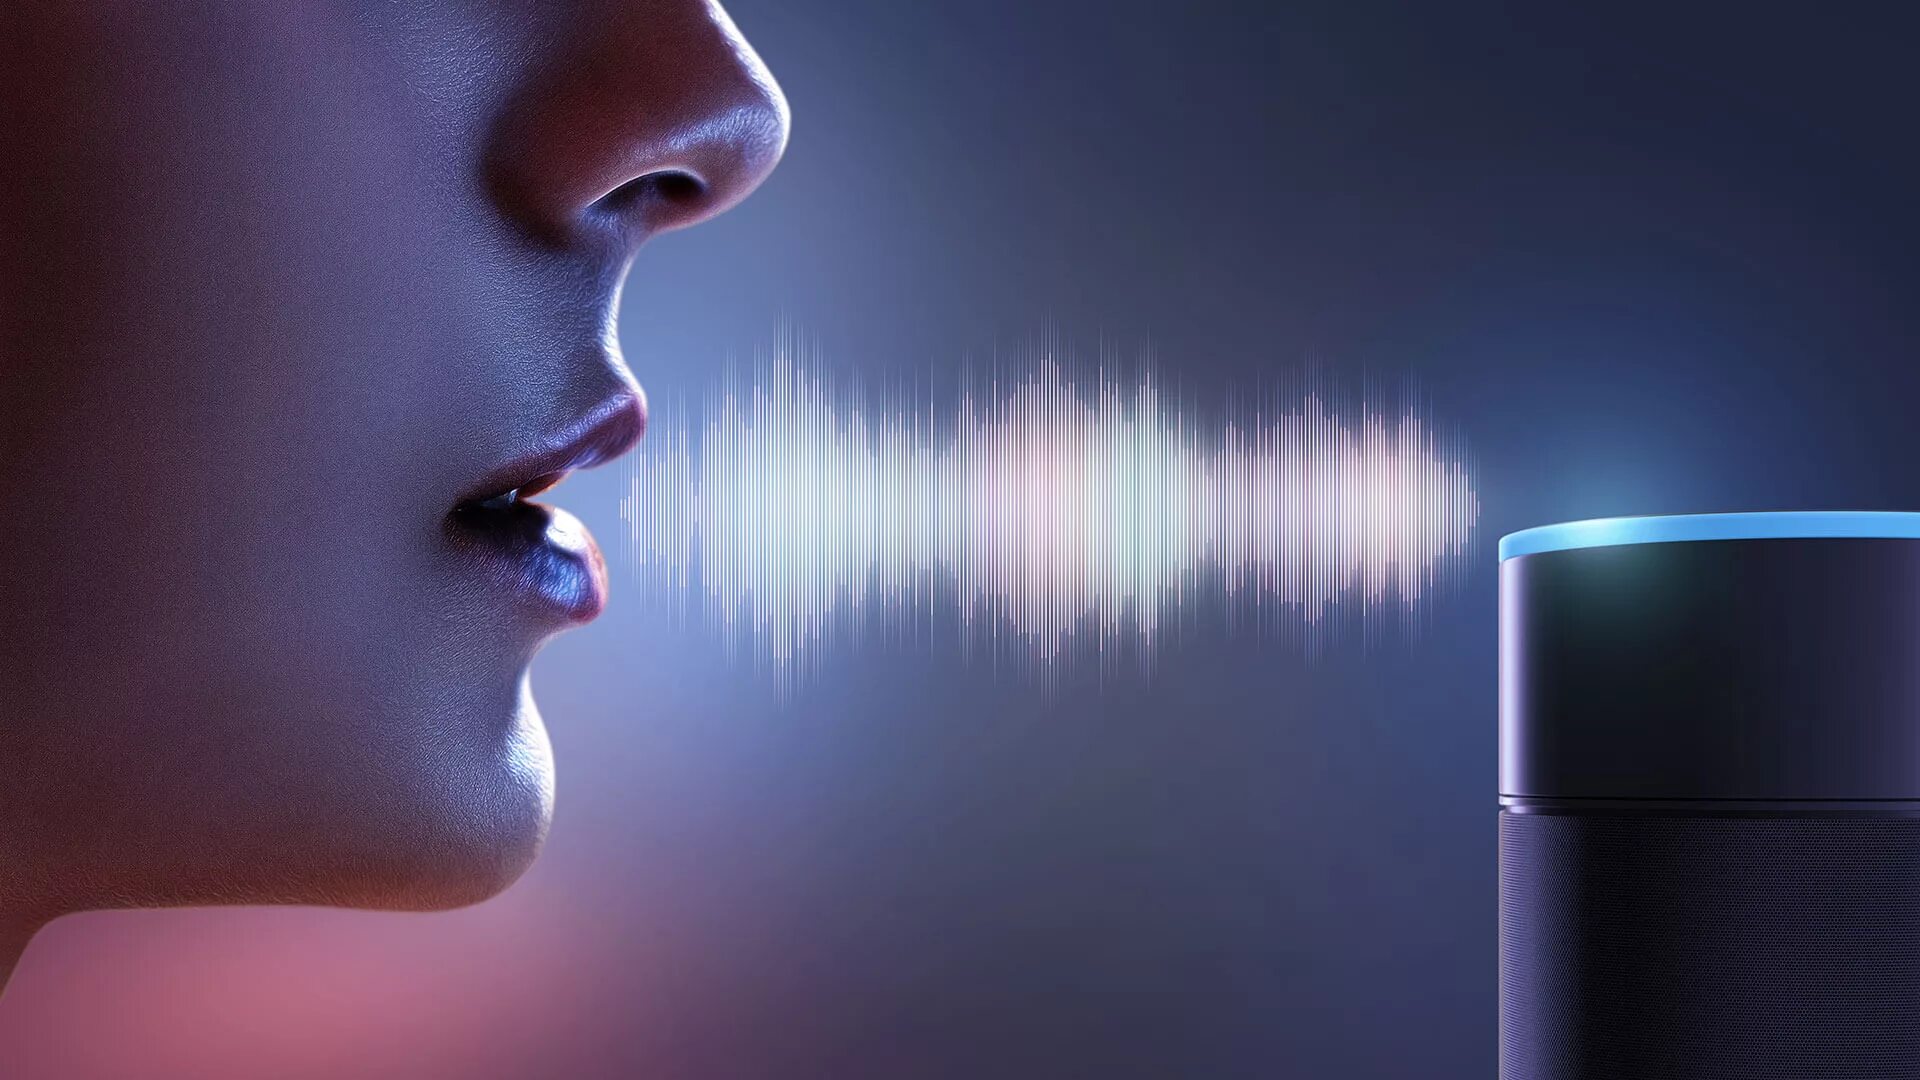 Определять человека по голосу. Идентификация по голосу. Распознавание речи. Биометрическая аутентификация по голосу. Биометрический сканер голоса.